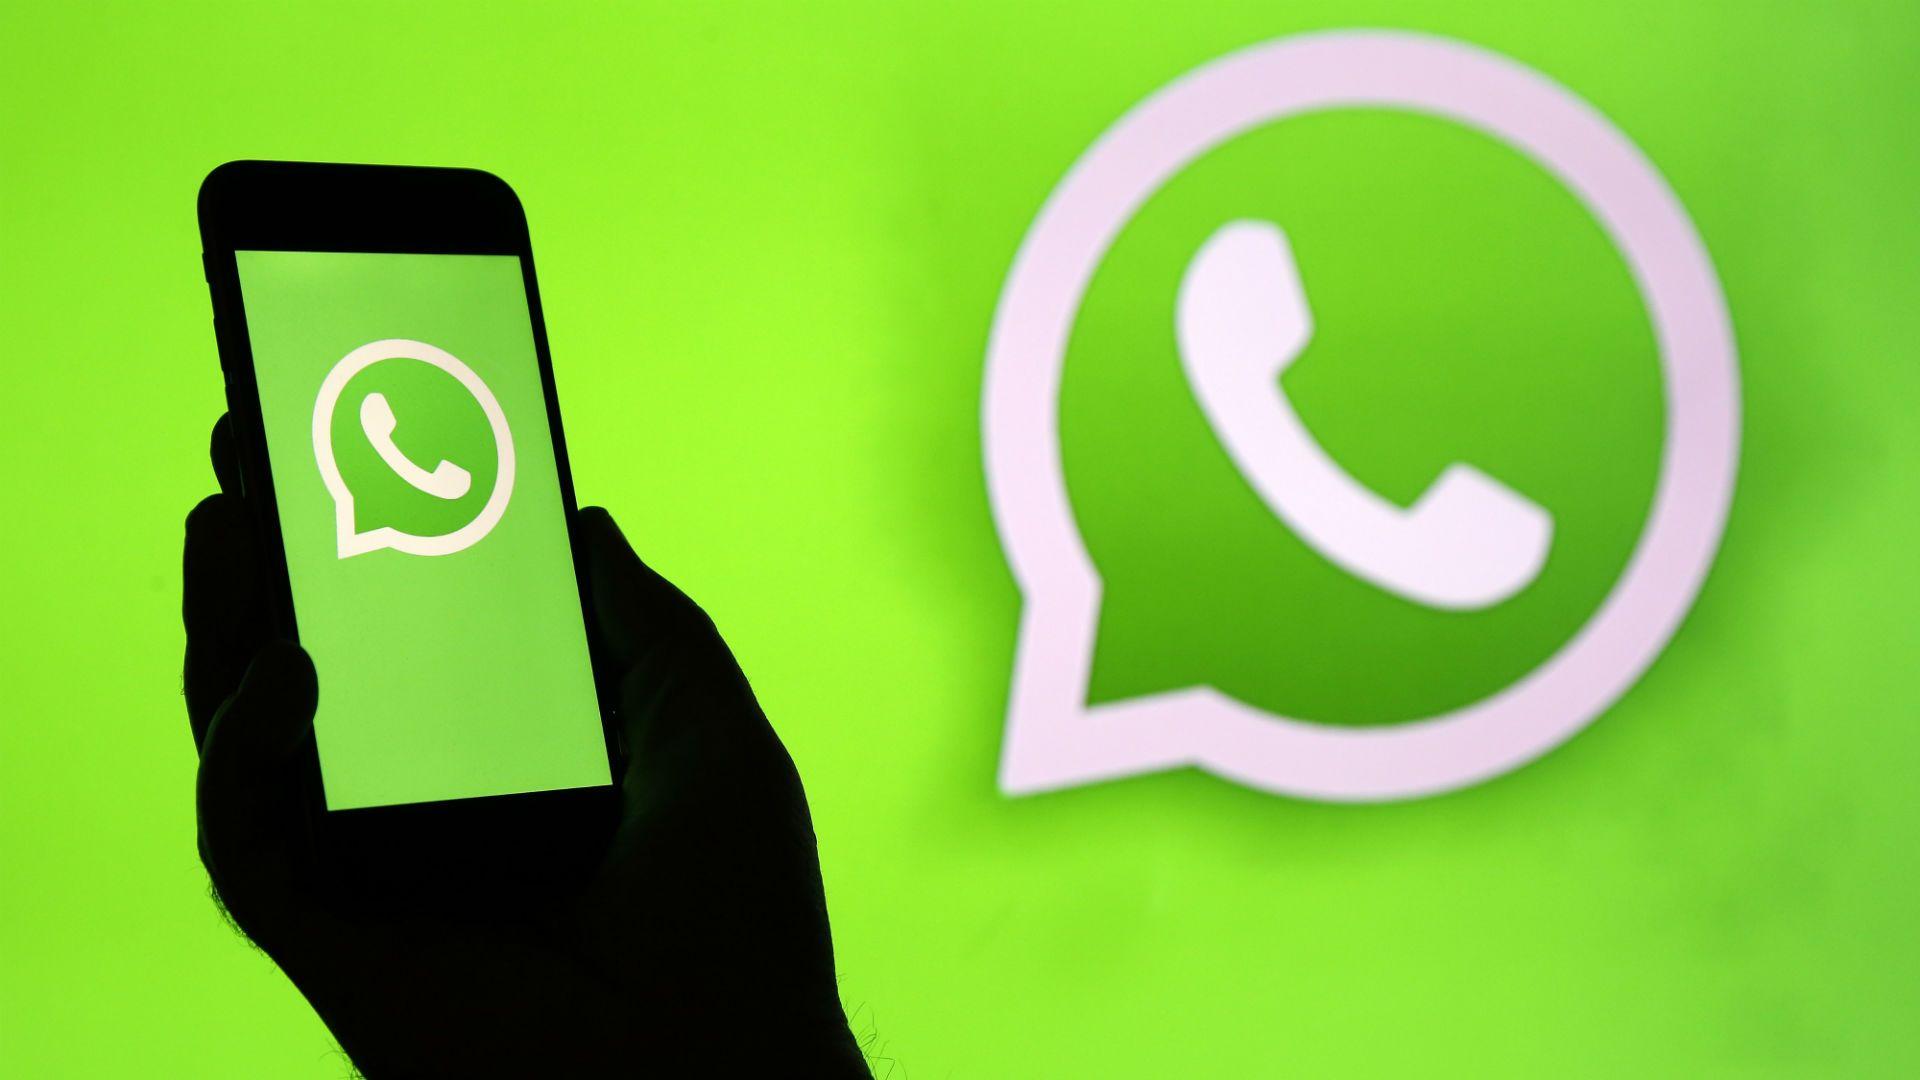 Whatsapp Kini Bisa Kirim Uang dan Bayar Tagihan